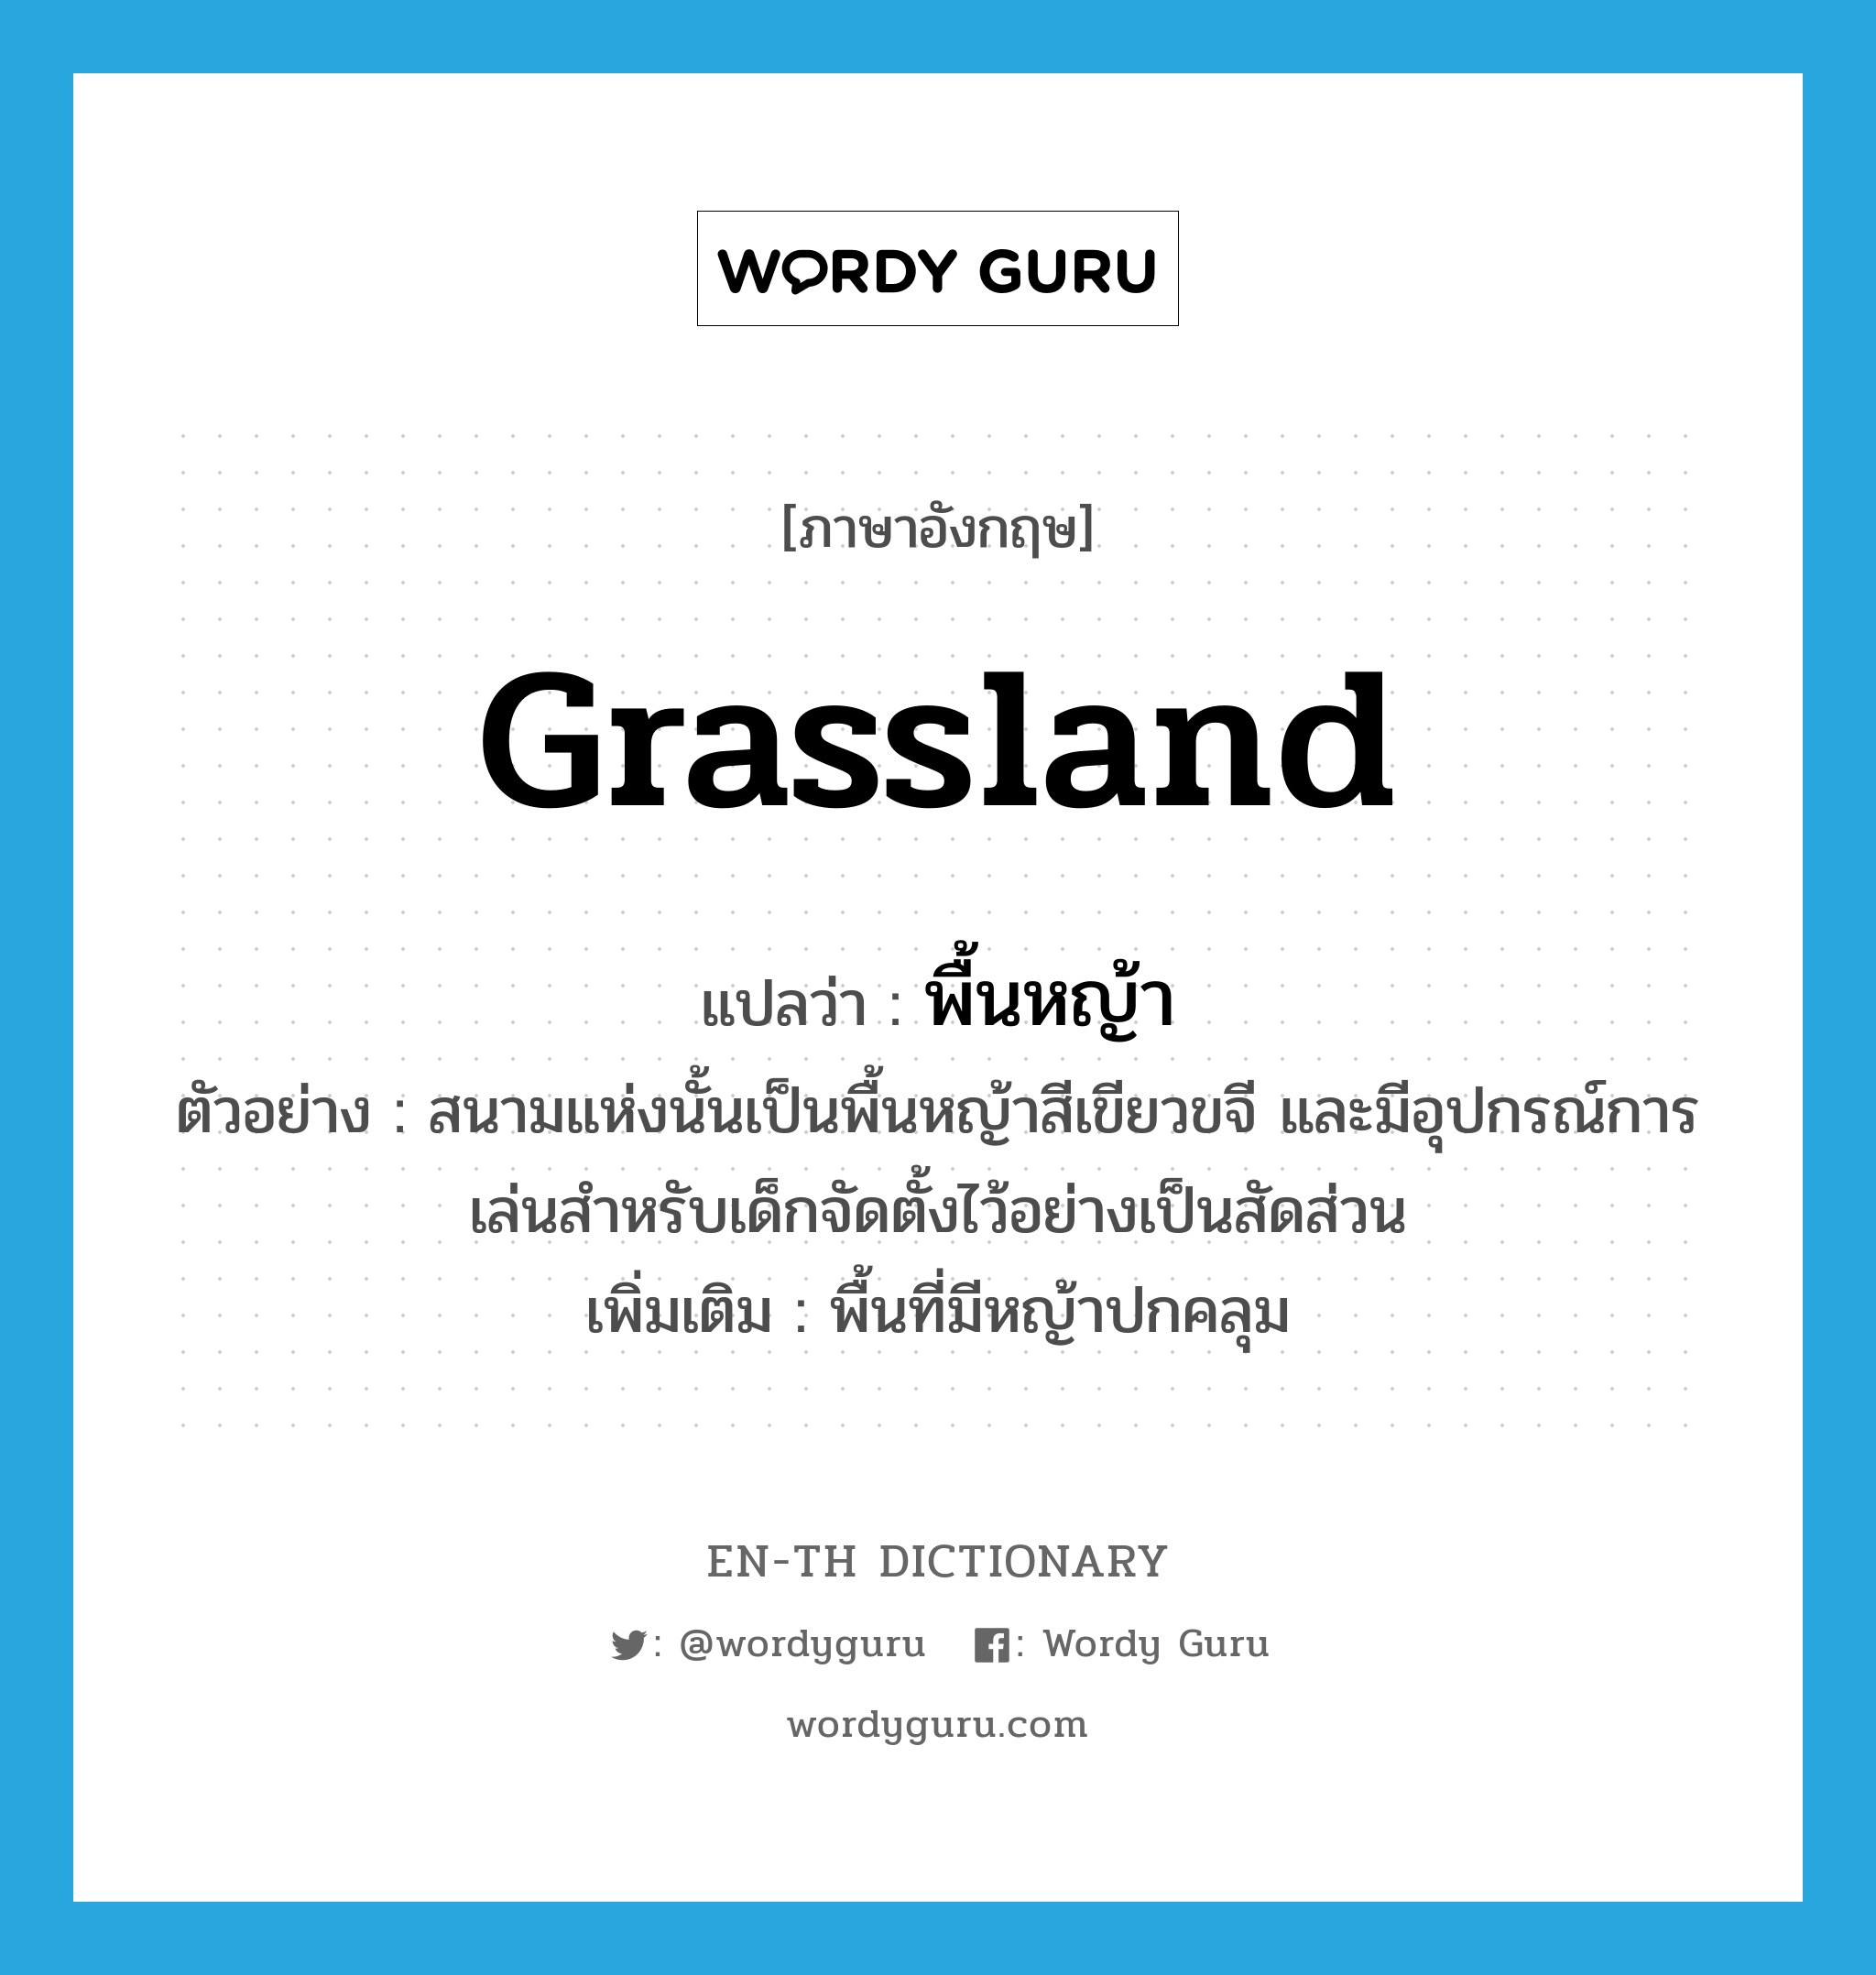 grassland แปลว่า?, คำศัพท์ภาษาอังกฤษ grassland แปลว่า พื้นหญ้า ประเภท N ตัวอย่าง สนามแห่งนั้นเป็นพื้นหญ้าสีเขียวขจี และมีอุปกรณ์การเล่นสำหรับเด็กจัดตั้งไว้อย่างเป็นสัดส่วน เพิ่มเติม พื้นที่มีหญ้าปกคลุม หมวด N